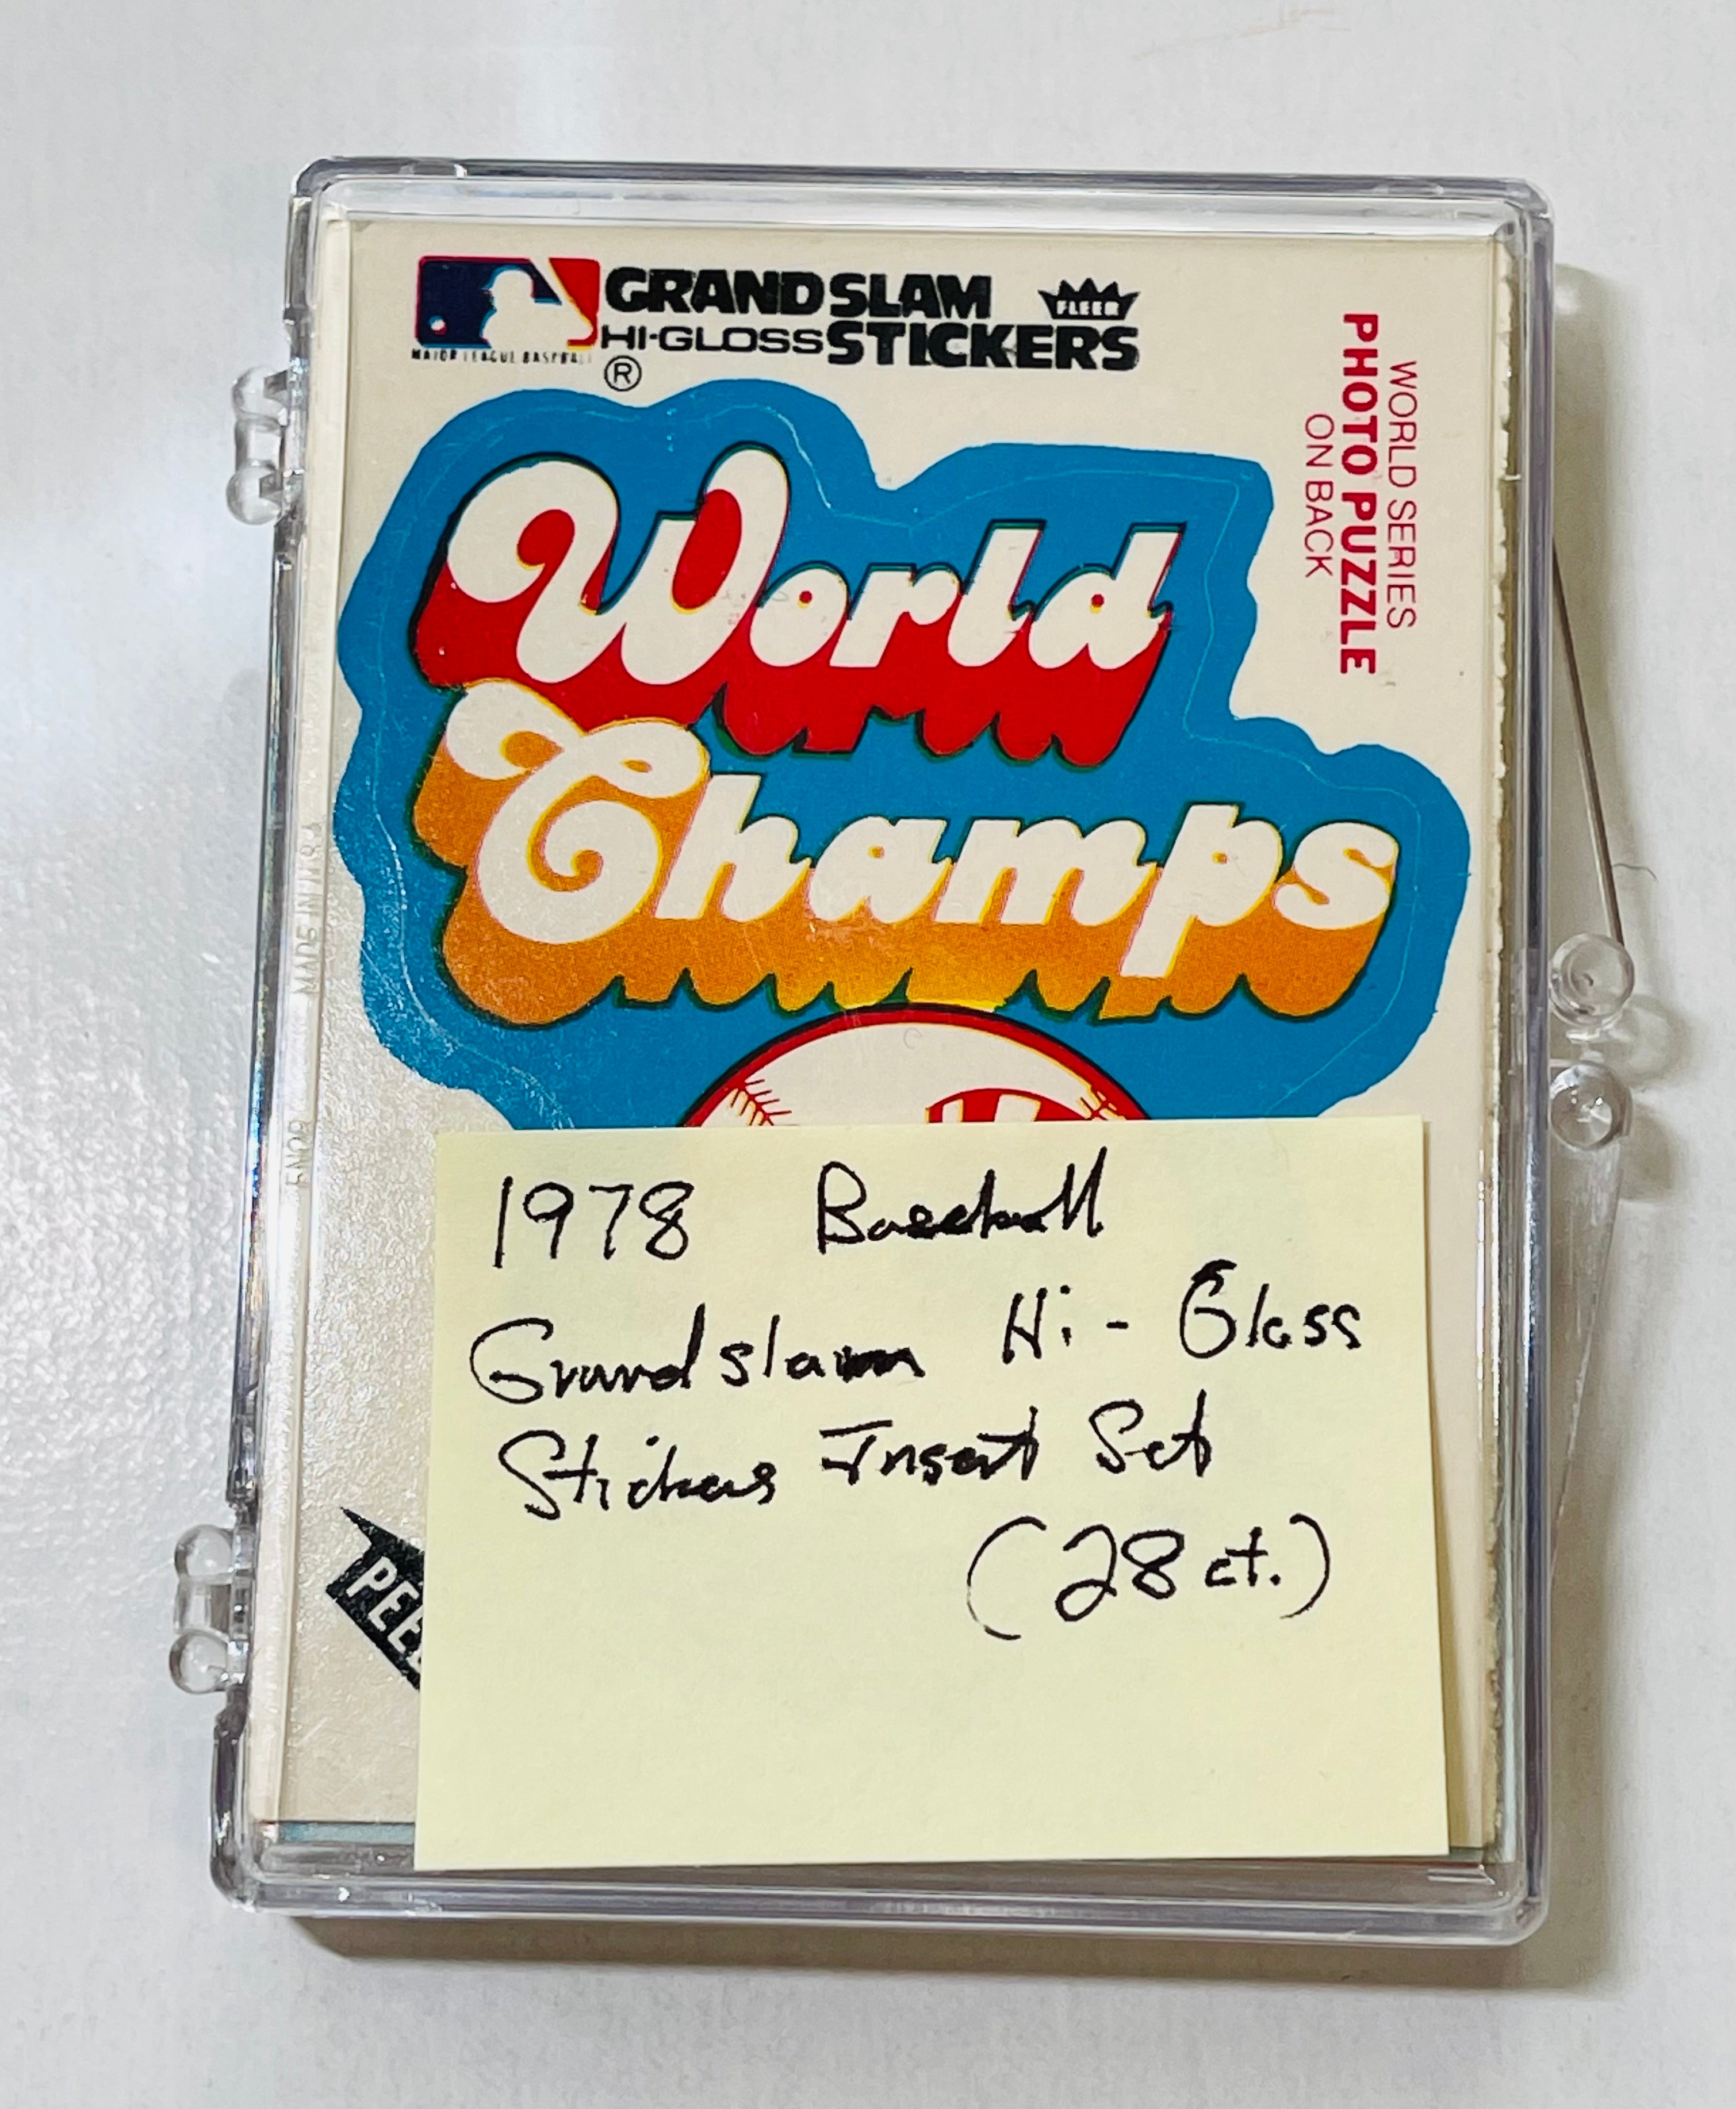 1978 Fleer baseball grand slam Hi-gloss team logos insert stickers set